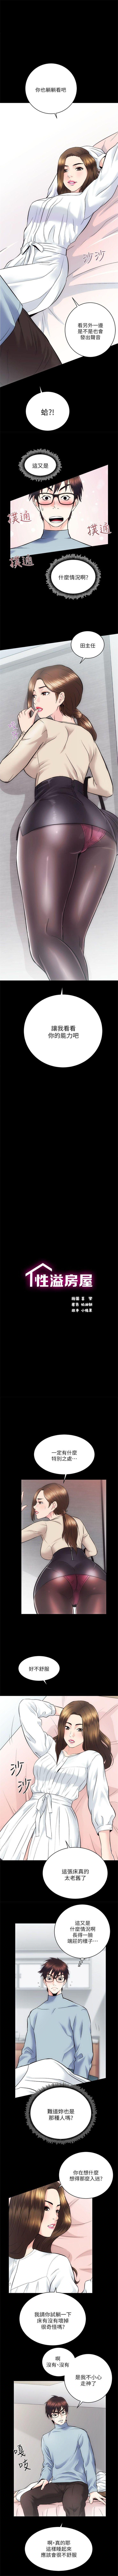 性溢房屋 1-20 中文翻译（应求更新中） 79